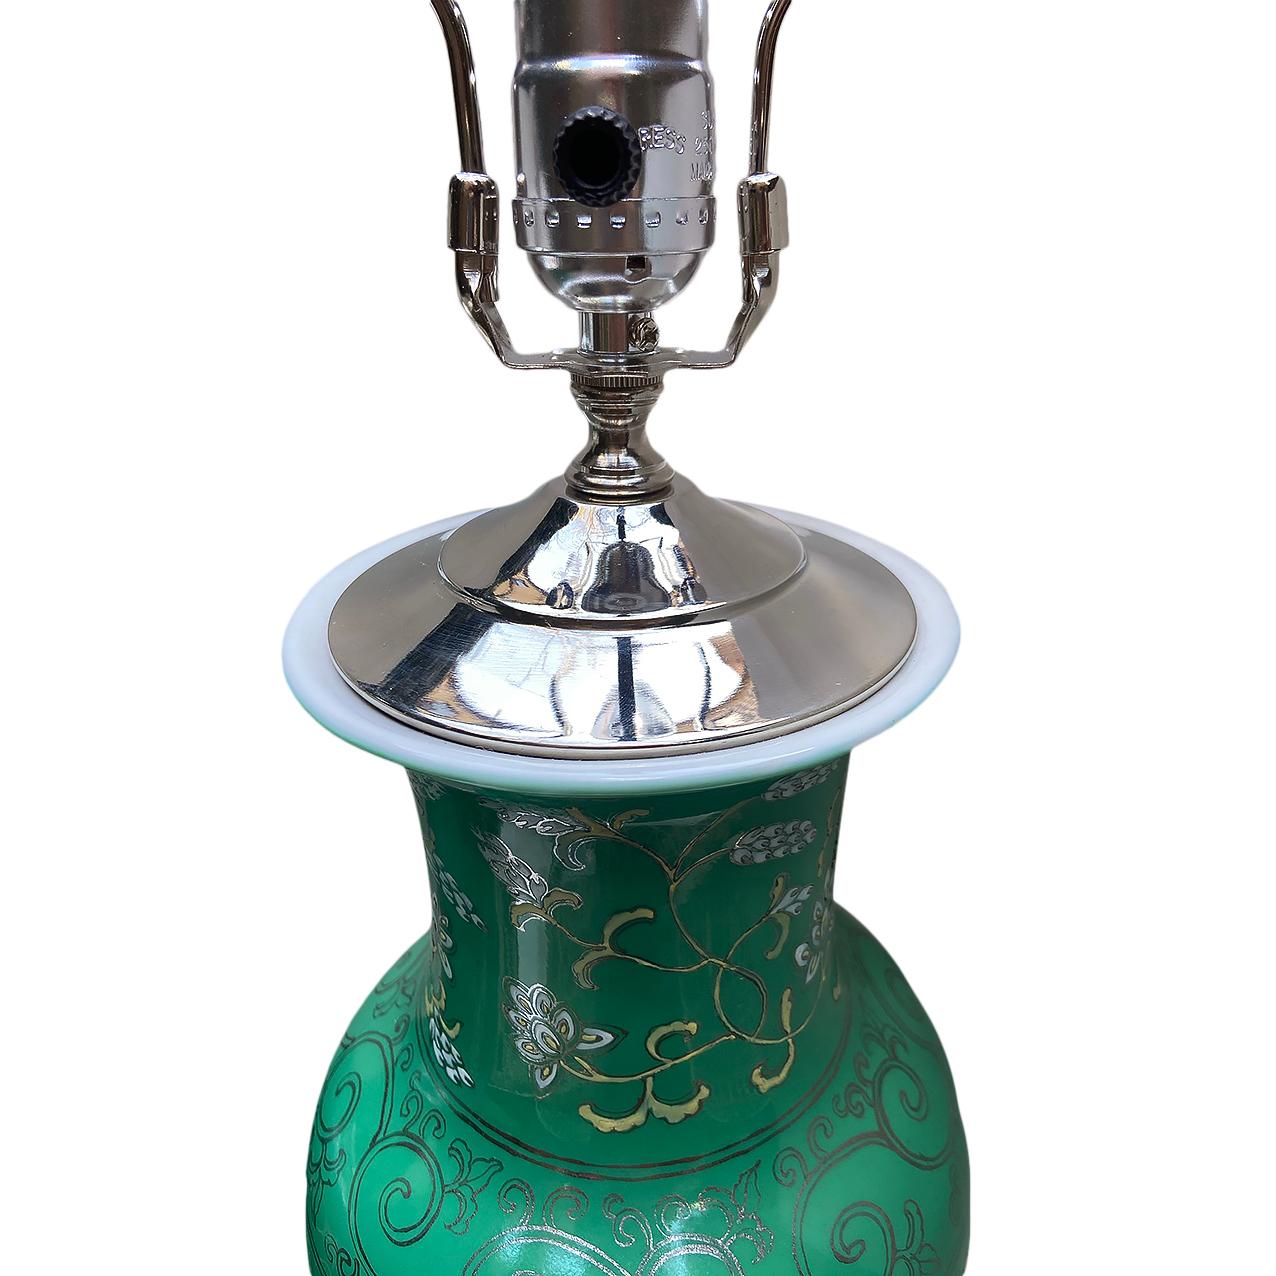 Paire de lampes de table italiennes des années 1940 en porcelaine avec décor floral et feuillage et motif argenté de feuille défilante sur le corps et ferrure nickelée.

Mesures :
Hauteur du corps 21
Diamètre 7 cm.